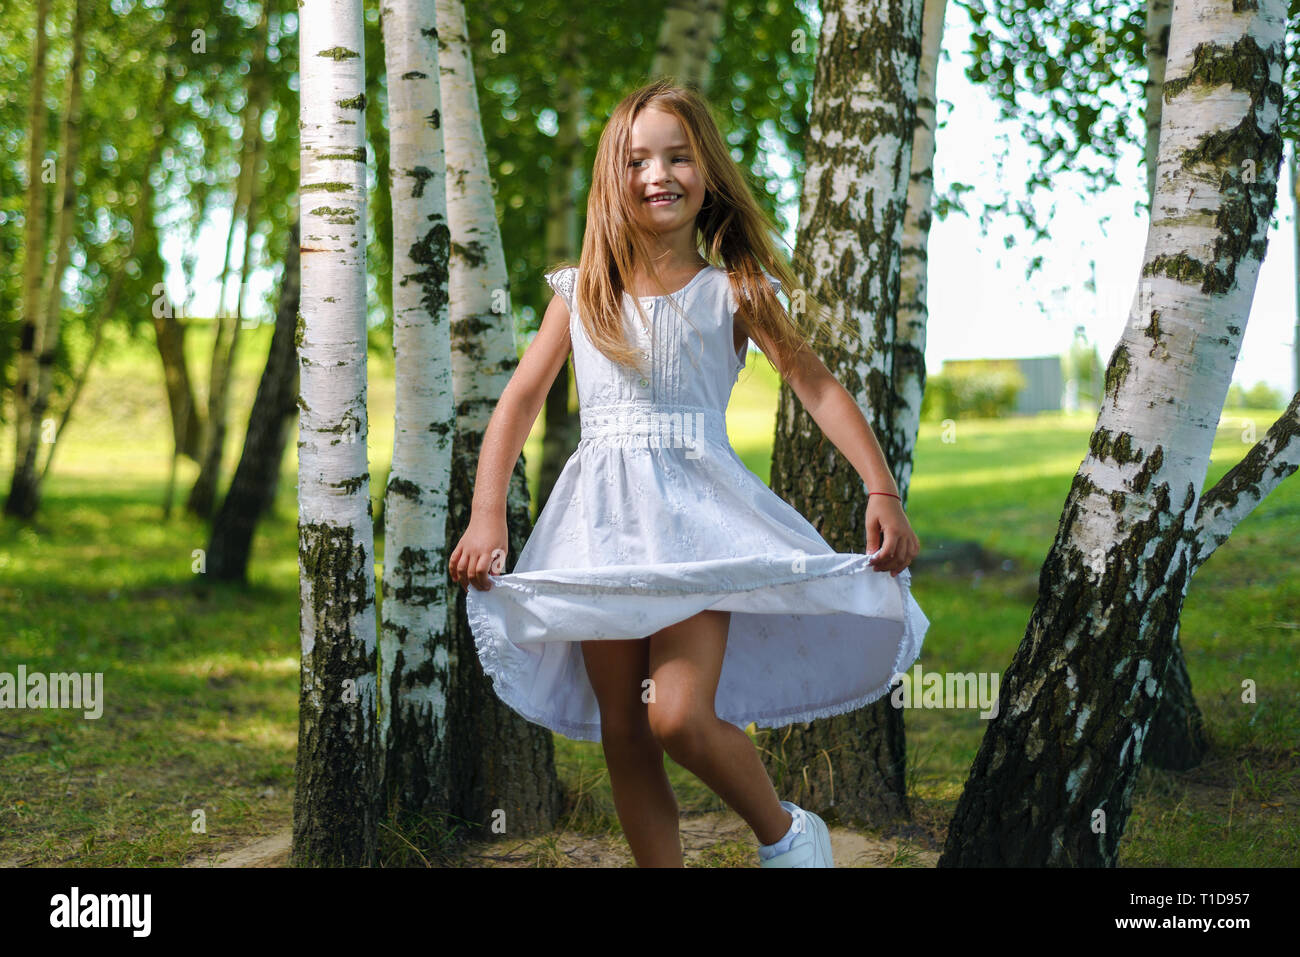 Jolie petite fille en robe blanche et s'enroule et danse entre les arbres du parc Banque D'Images